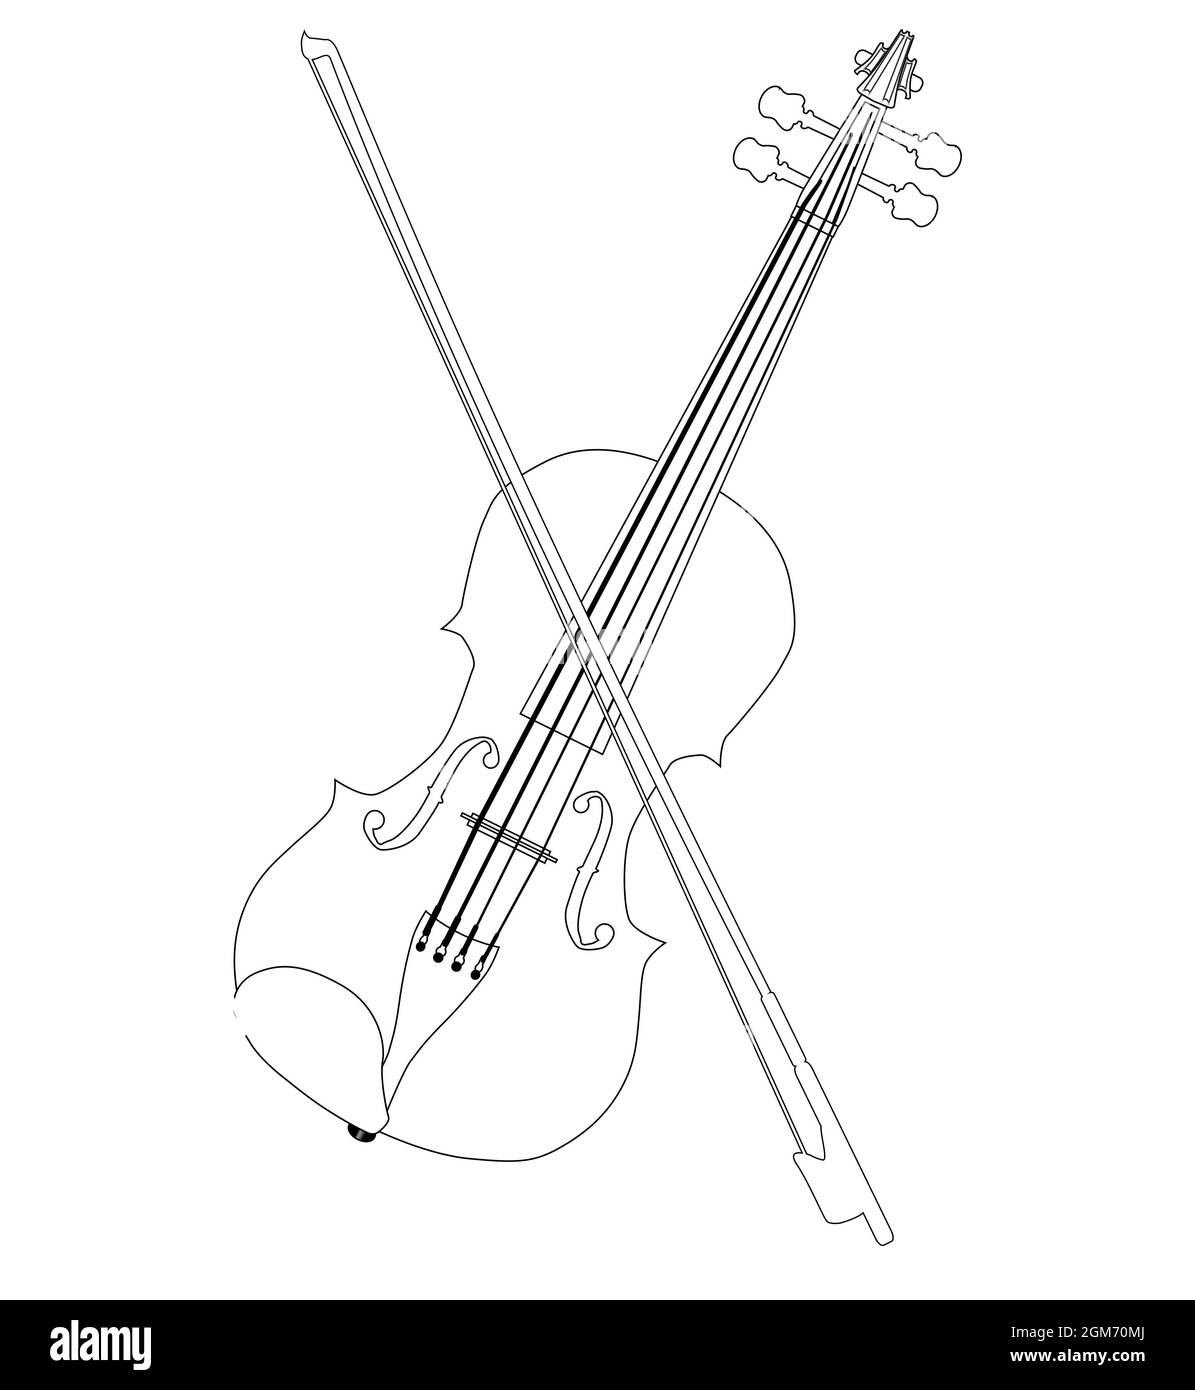 Un violon et un arc typiques en ligne noire dessinant isolés sur un fond blanc Banque D'Images